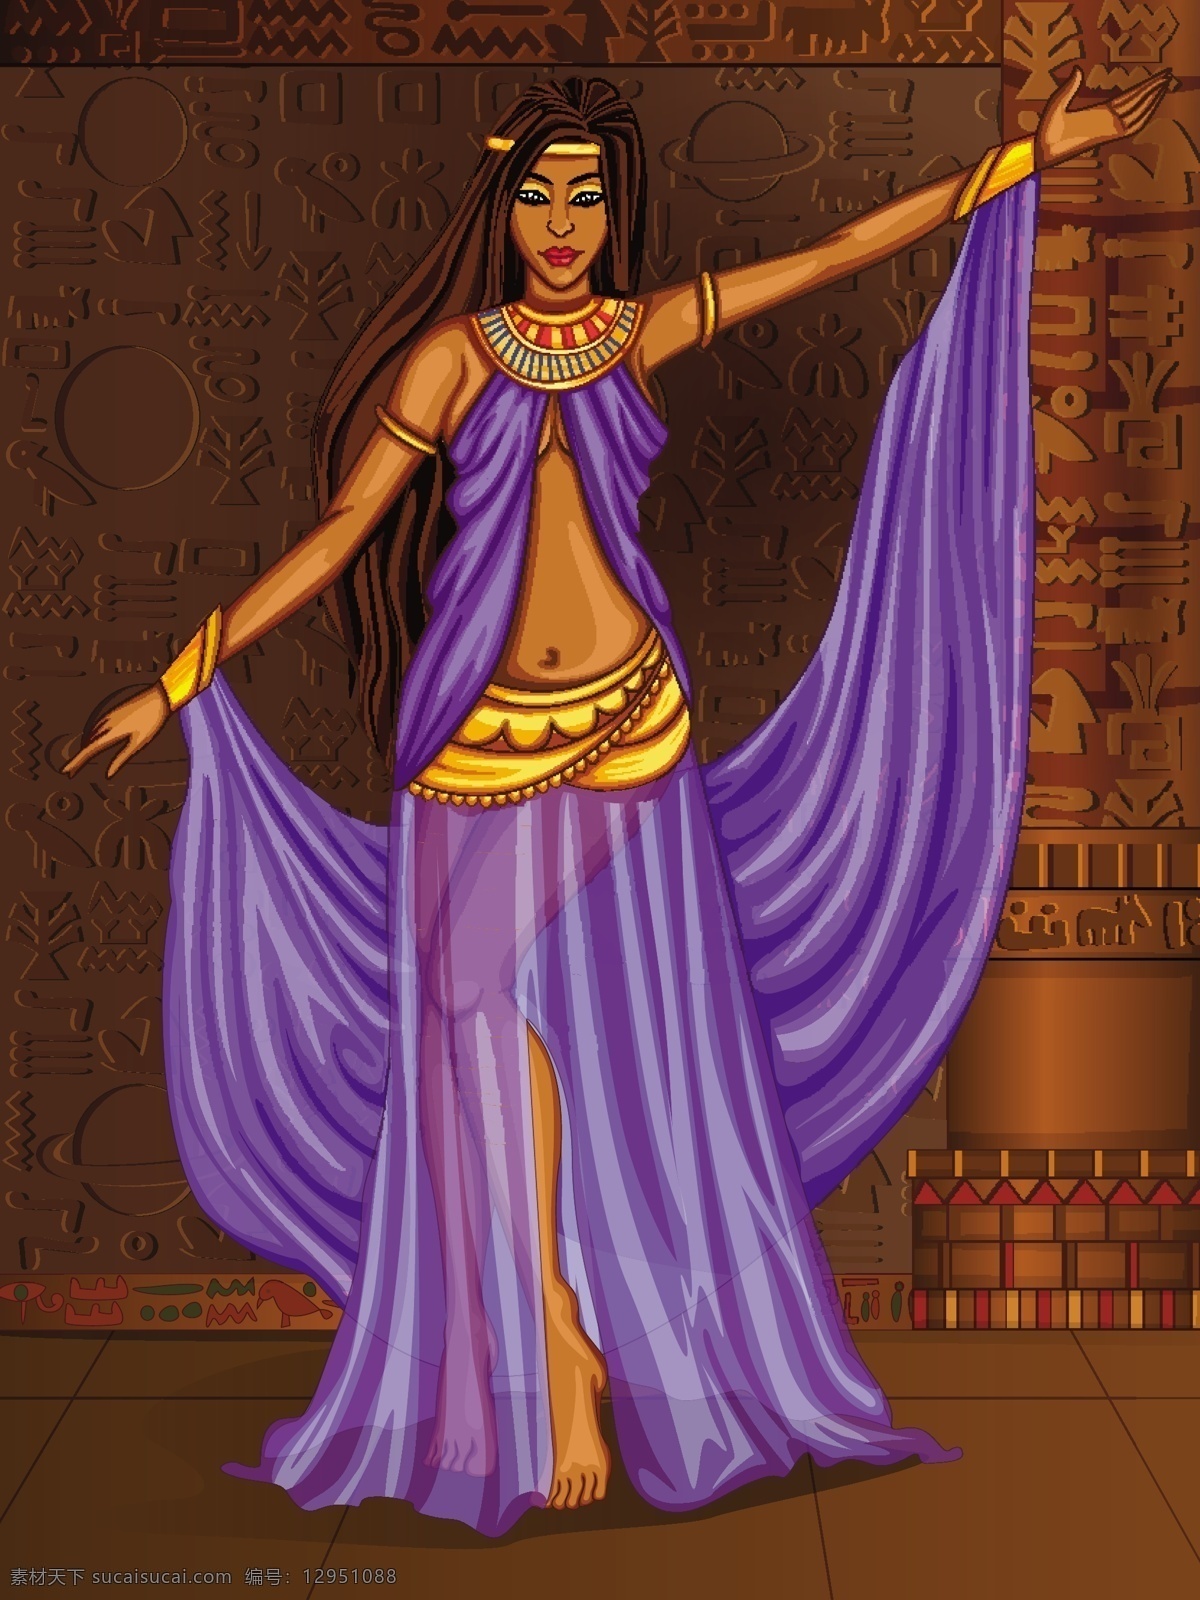 古埃 宫殿 中 穿着 紫色 纱裙 跳舞 埃及 考古文明 室内装饰设计 神圣 民族 幻想 女性 舞蹈 女神 历史首饰 传说 魔术 神话 公主 女王 宗教 雕塑 传统游戏 卡通 动漫动画 动漫人物